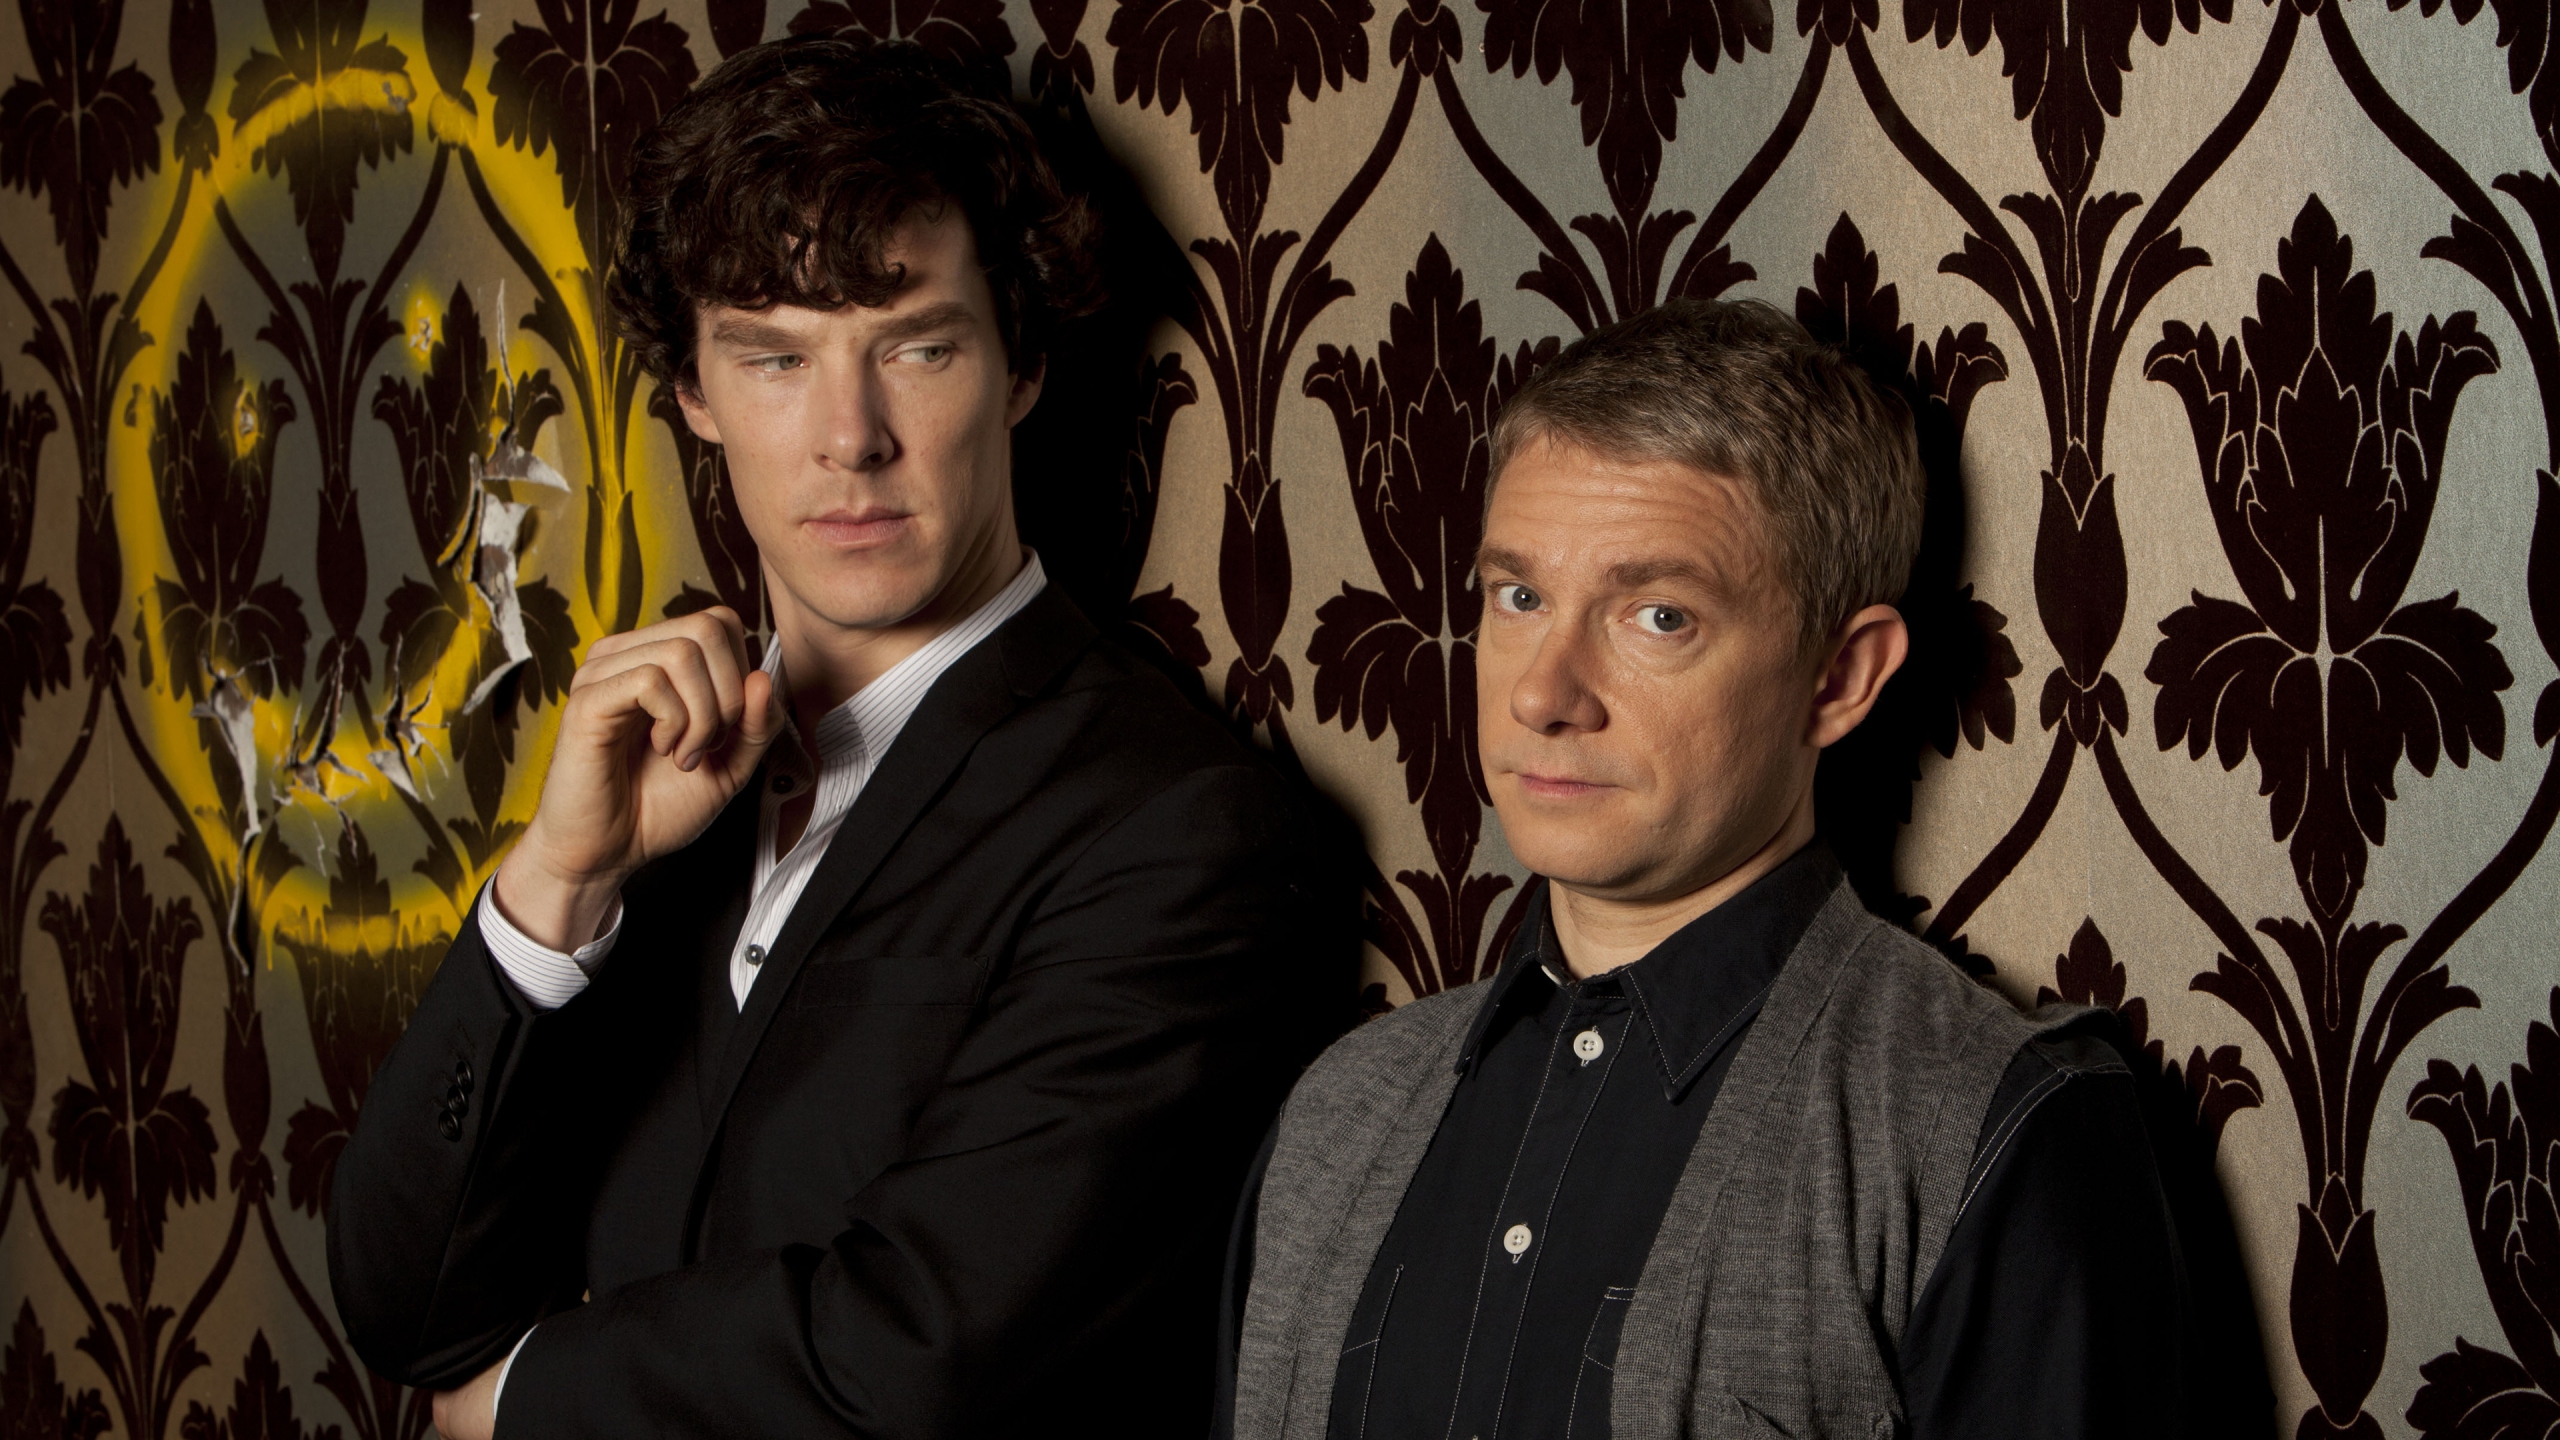 Sherlock and John for 2560x1440 HDTV resolution